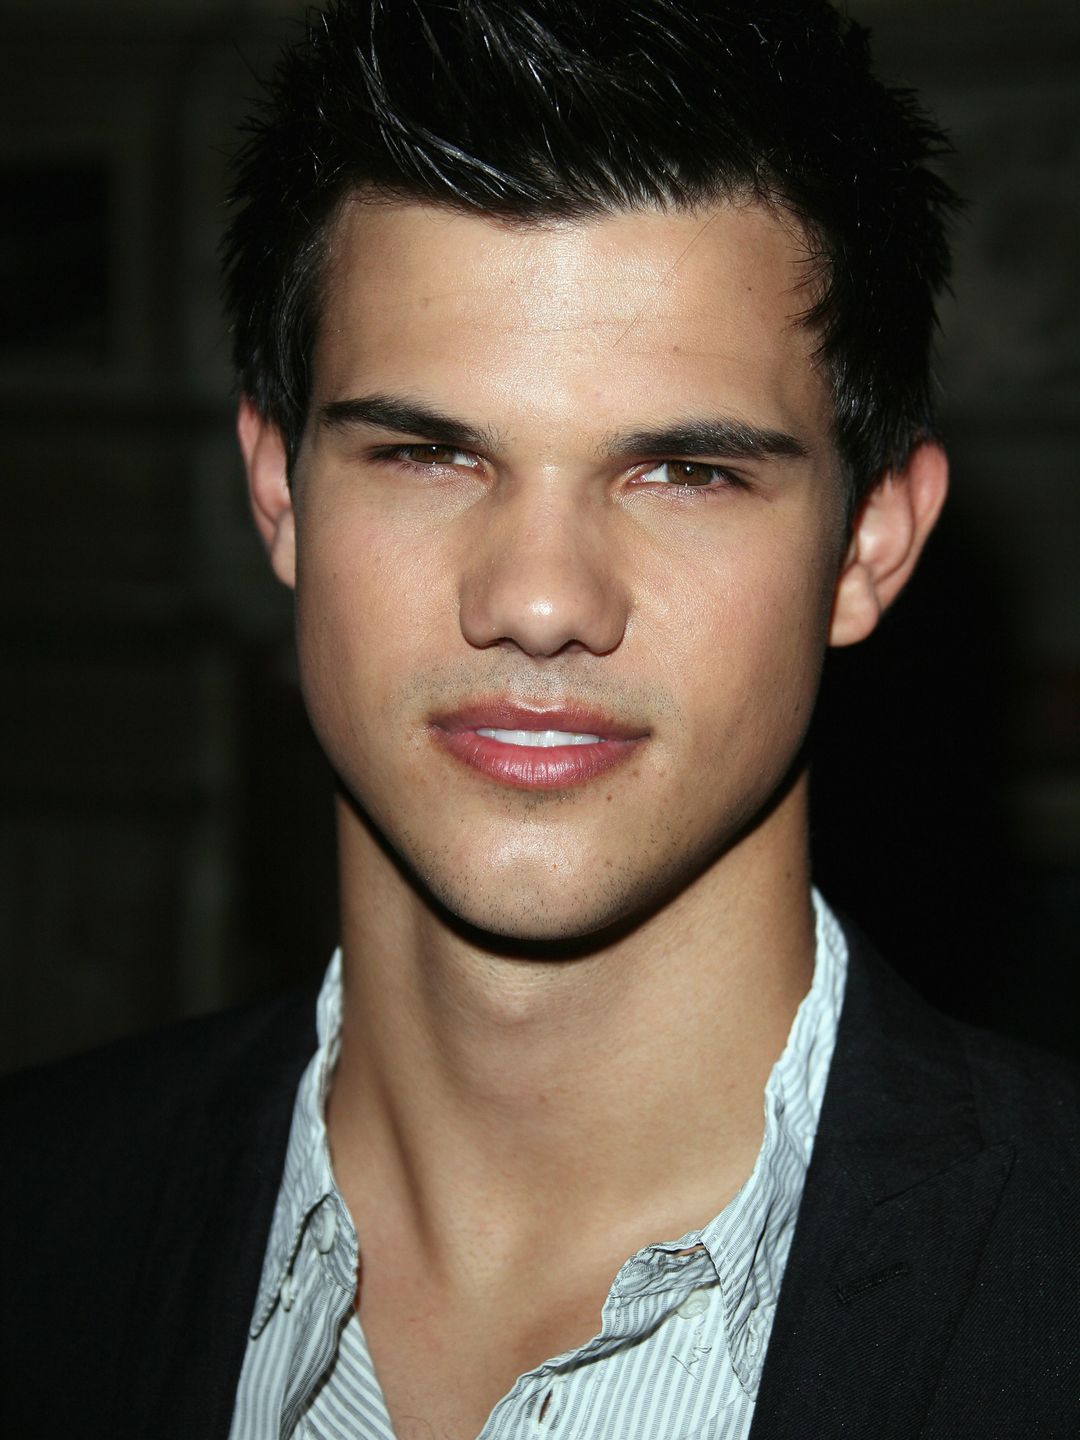 Taylor Lautner high school pics